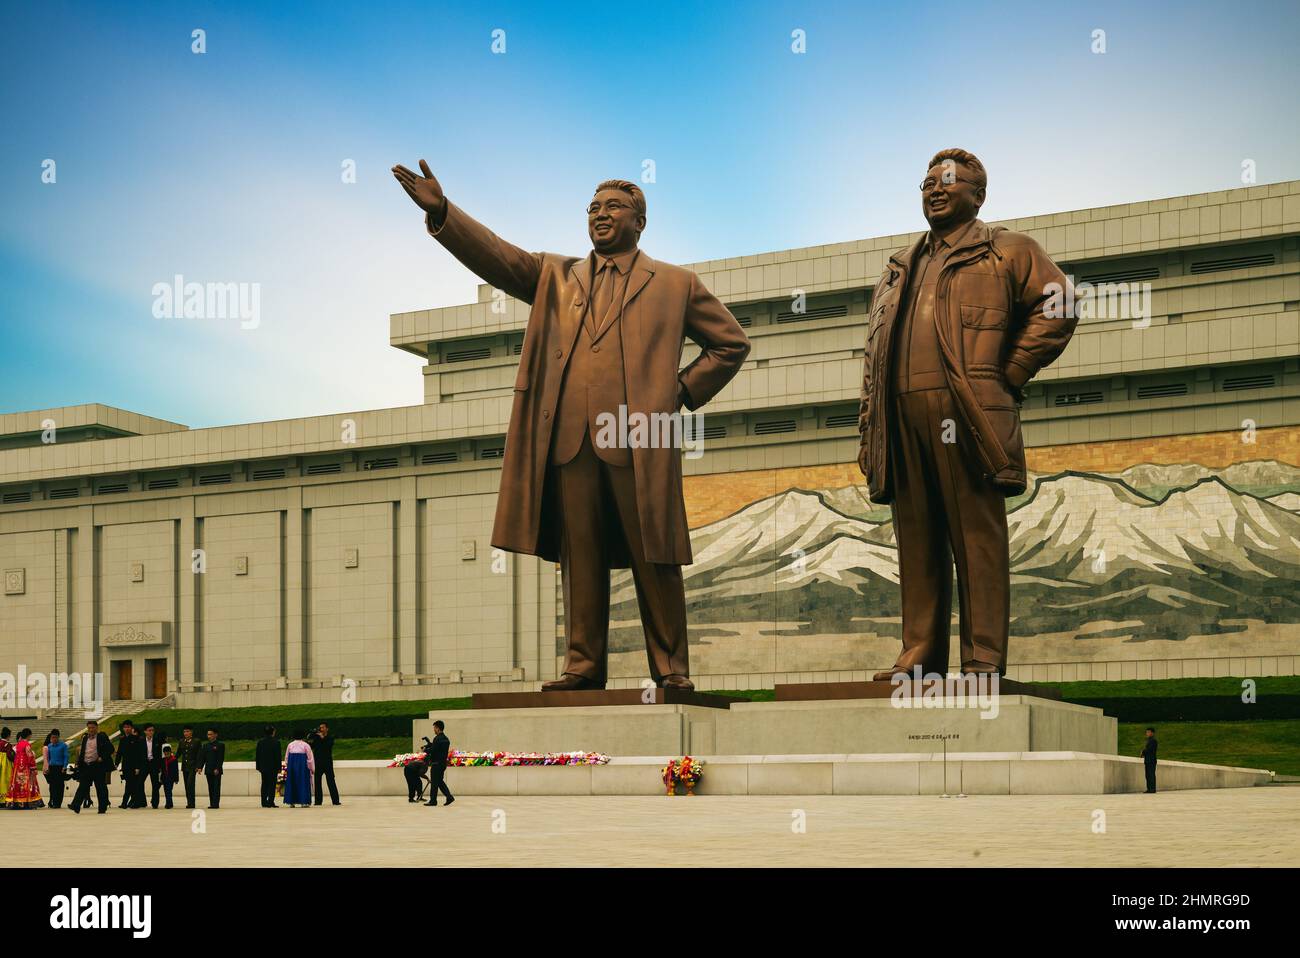 29 aprile 2019: Statue di Kim il Sung e Kim Jong il alte 20 metri nella parte centrale del Mansu Hill Grand Monument situato a Mansudae, pyongyang Foto Stock